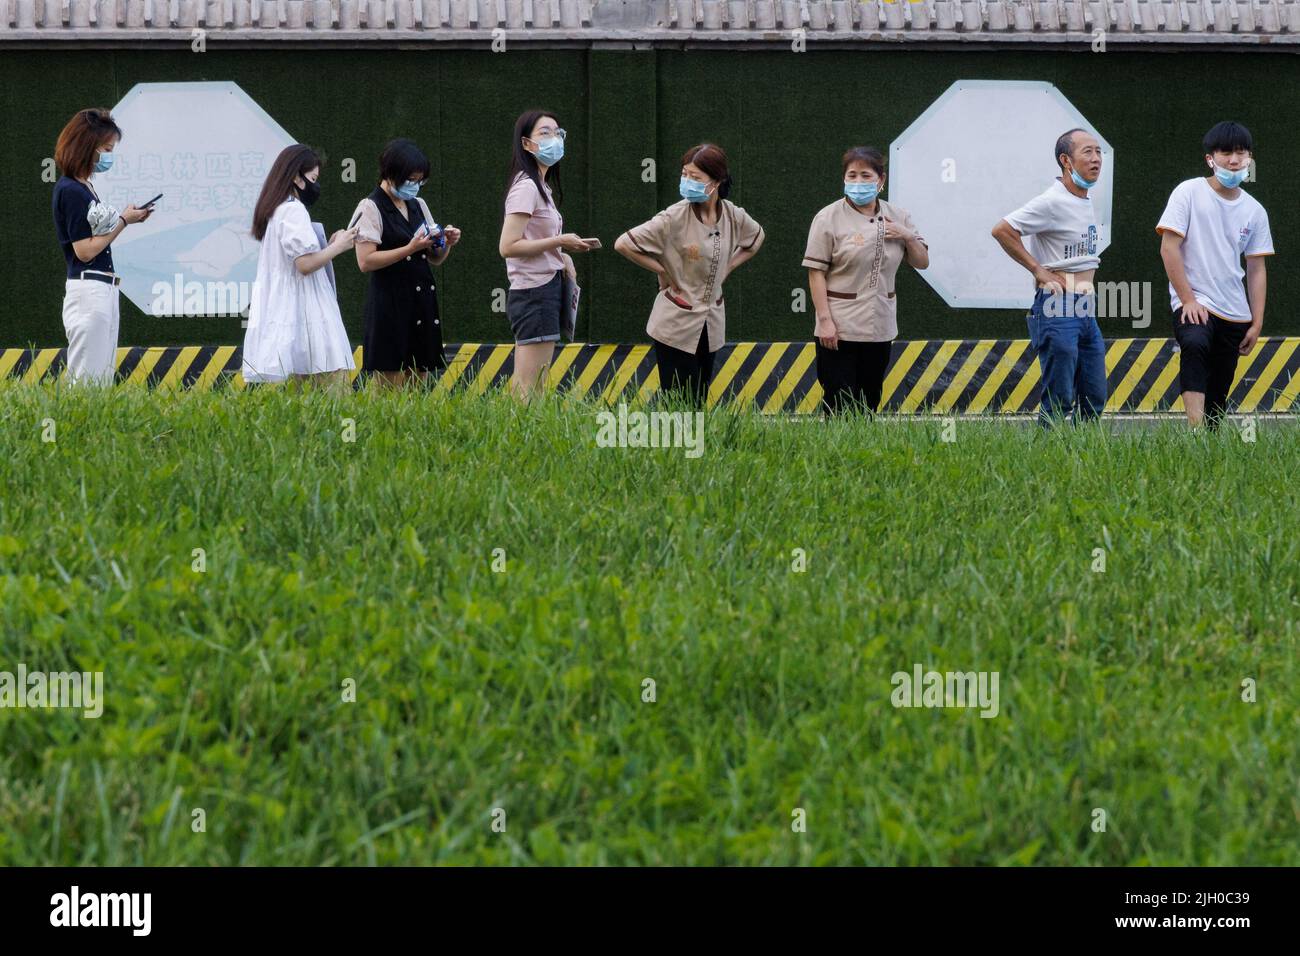 Le persone si allineano in una stazione di analisi degli acidi nucleici, a seguito di un focolaio di coronavirus (COVID-19), a Pechino, Cina, 14 luglio 2022. REUTERS/Thomas Peter Foto Stock